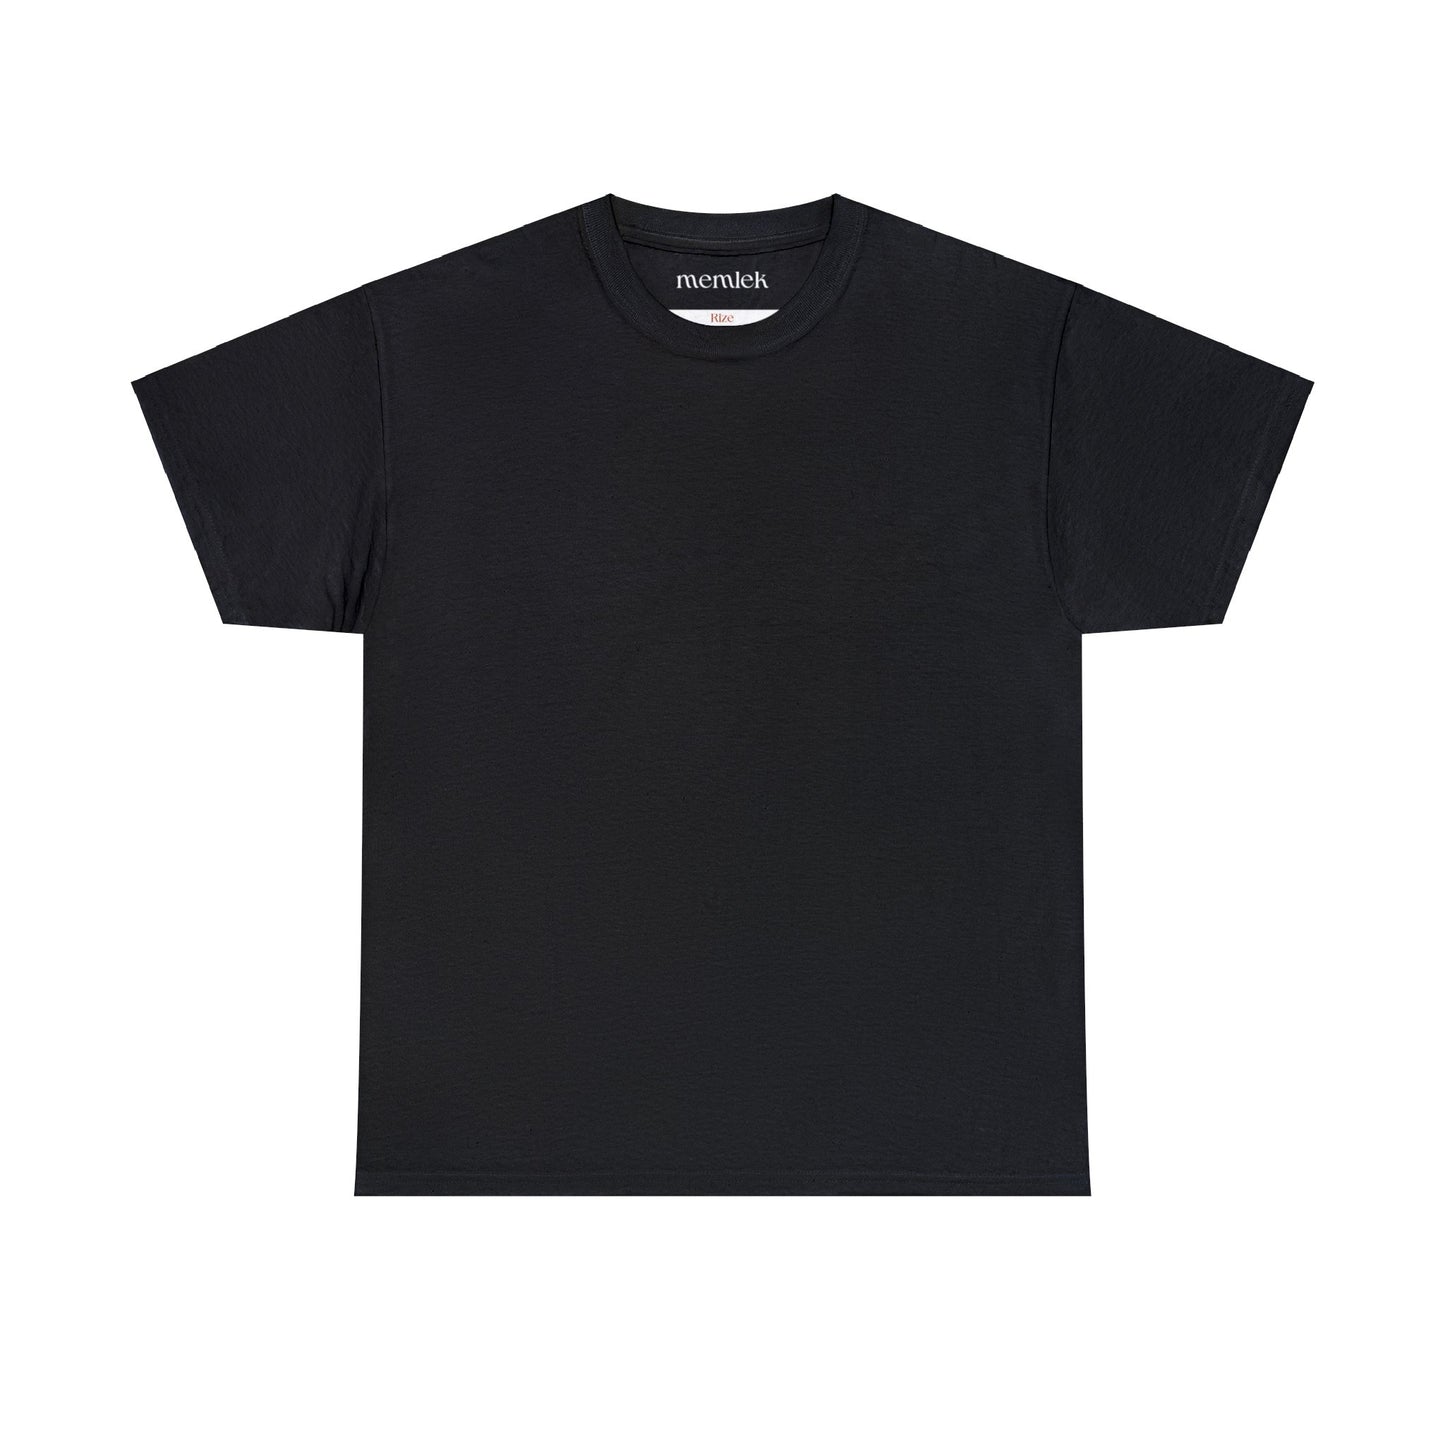 Siyah Lale - 53 Rize - T-Shirt - Back Print - Black/White